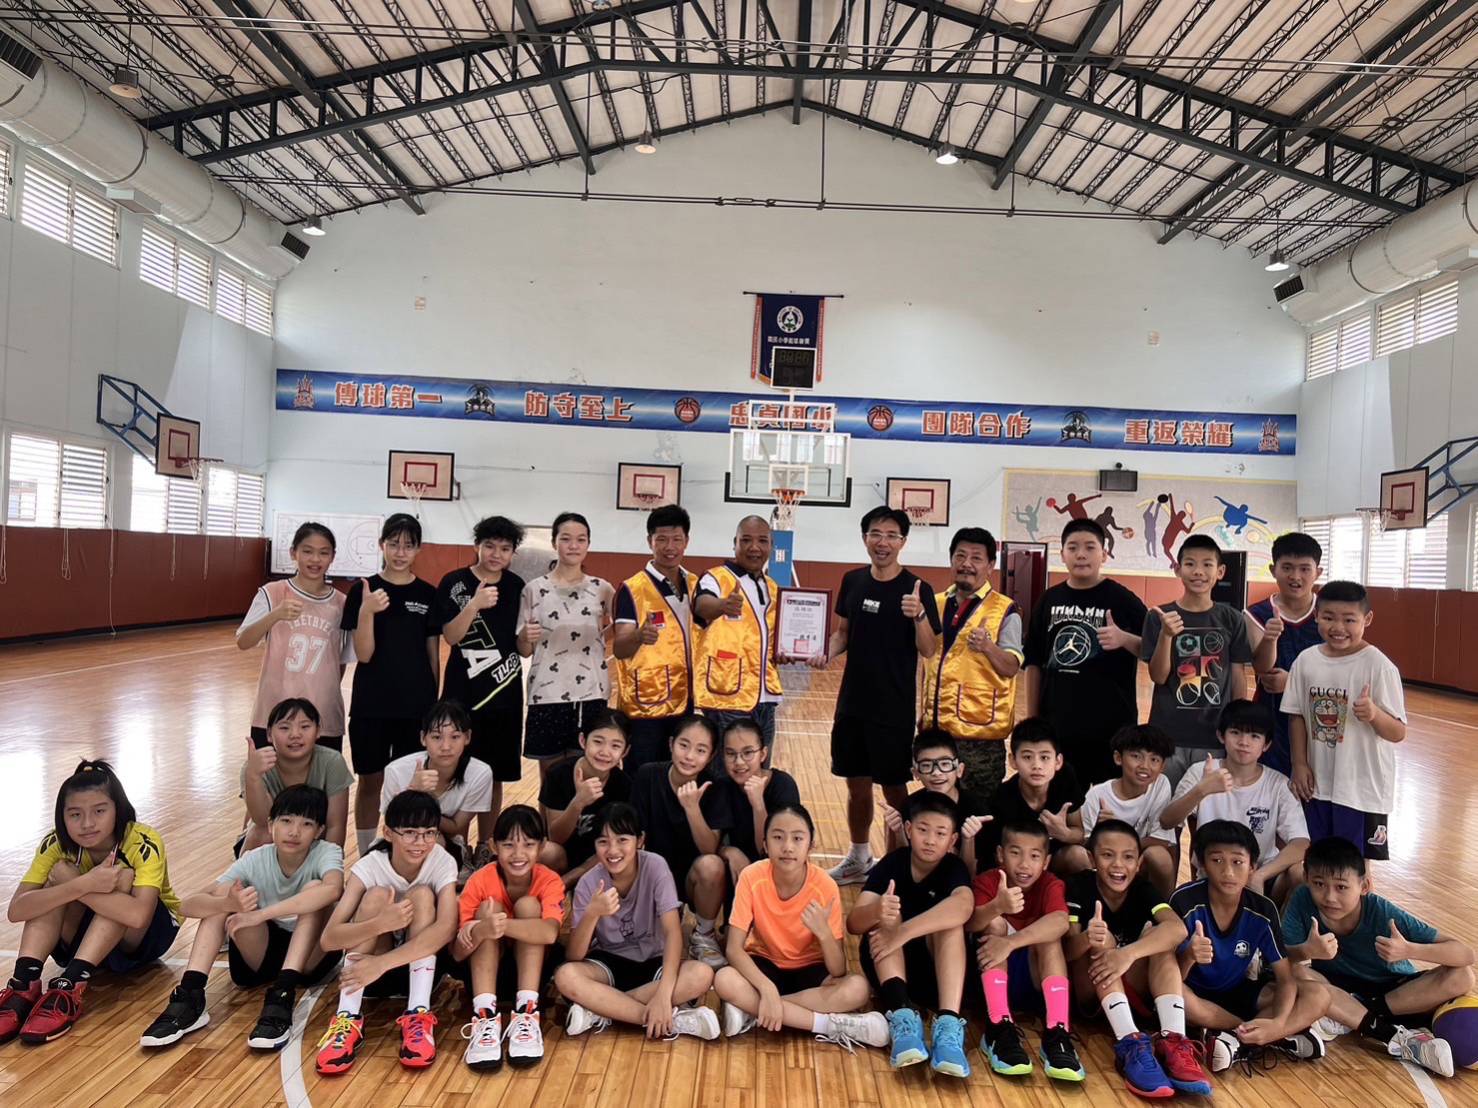 膜力威數位科技創辦人陳中威捐贈母校忠貞國小籃球隊制服